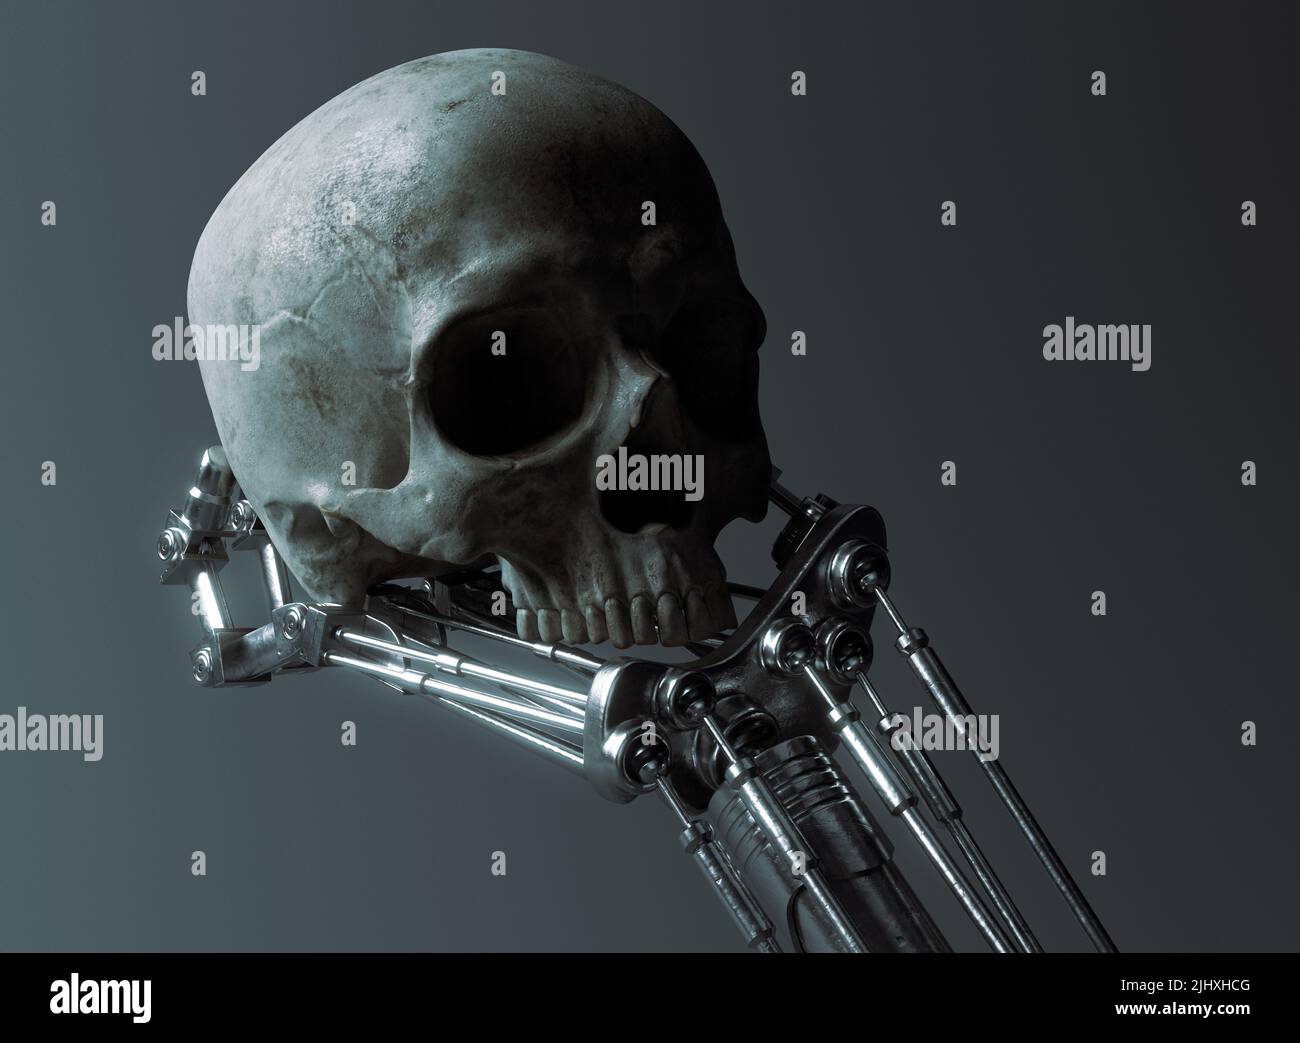 Un concetto futuristico di una mano meccanica robotica in metallo che tiene in mano e analizza un cranio umano su uno sfondo oscuro e ominoso - 3D rendering Foto Stock